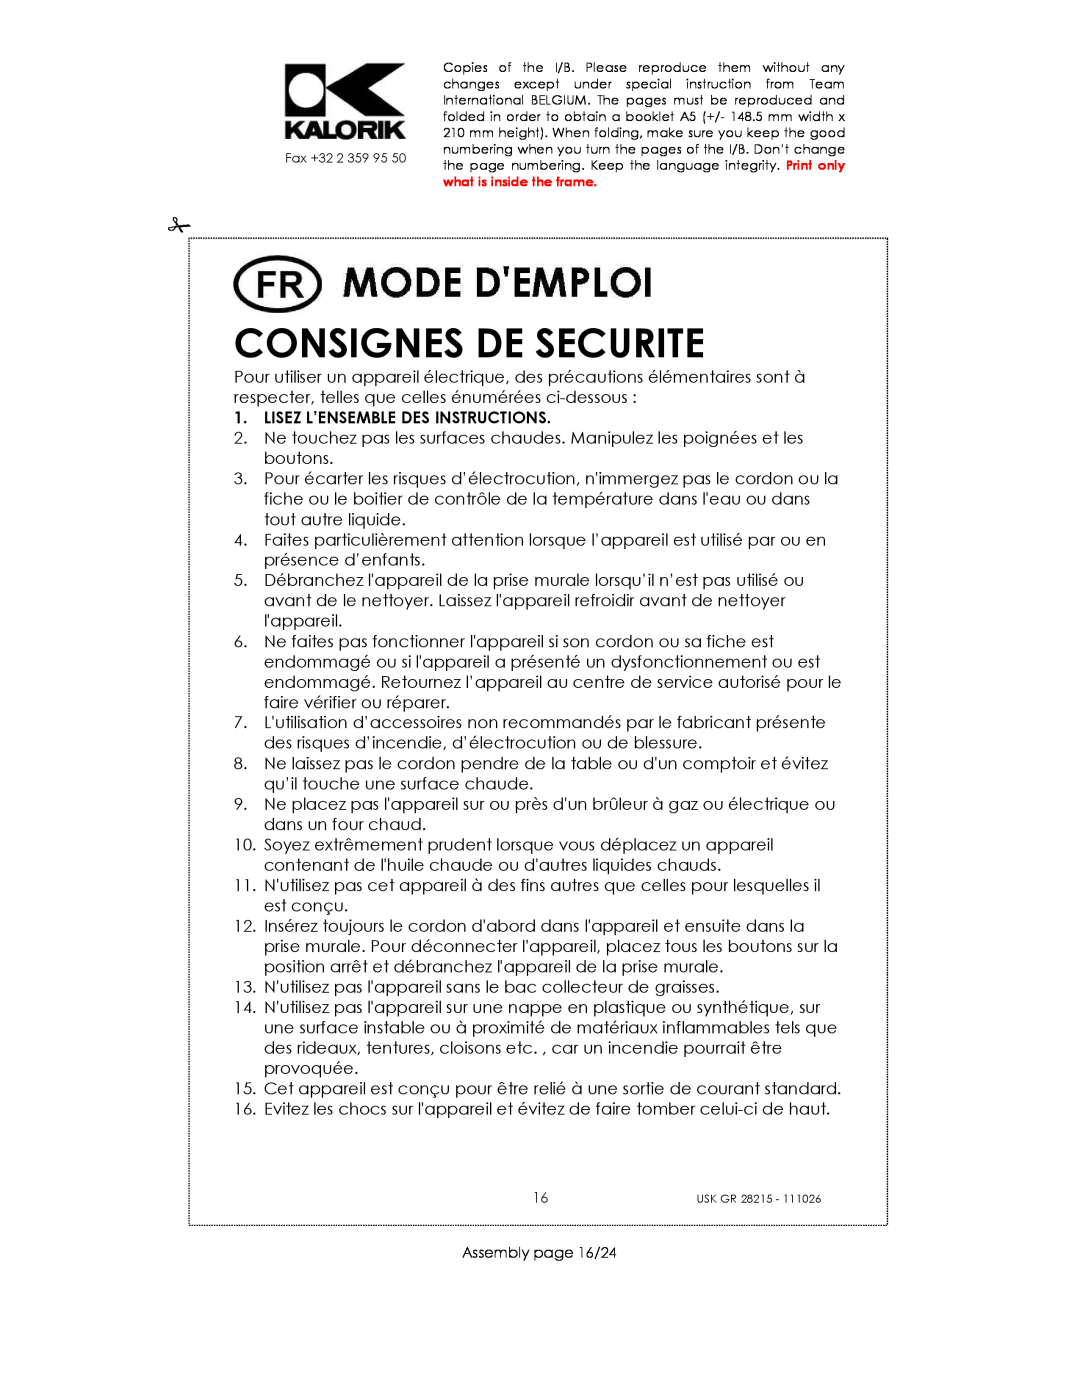 Kalorik USK GR 28215 manual Consignes De Securite, Lisez L’Ensemble Des Instructions 